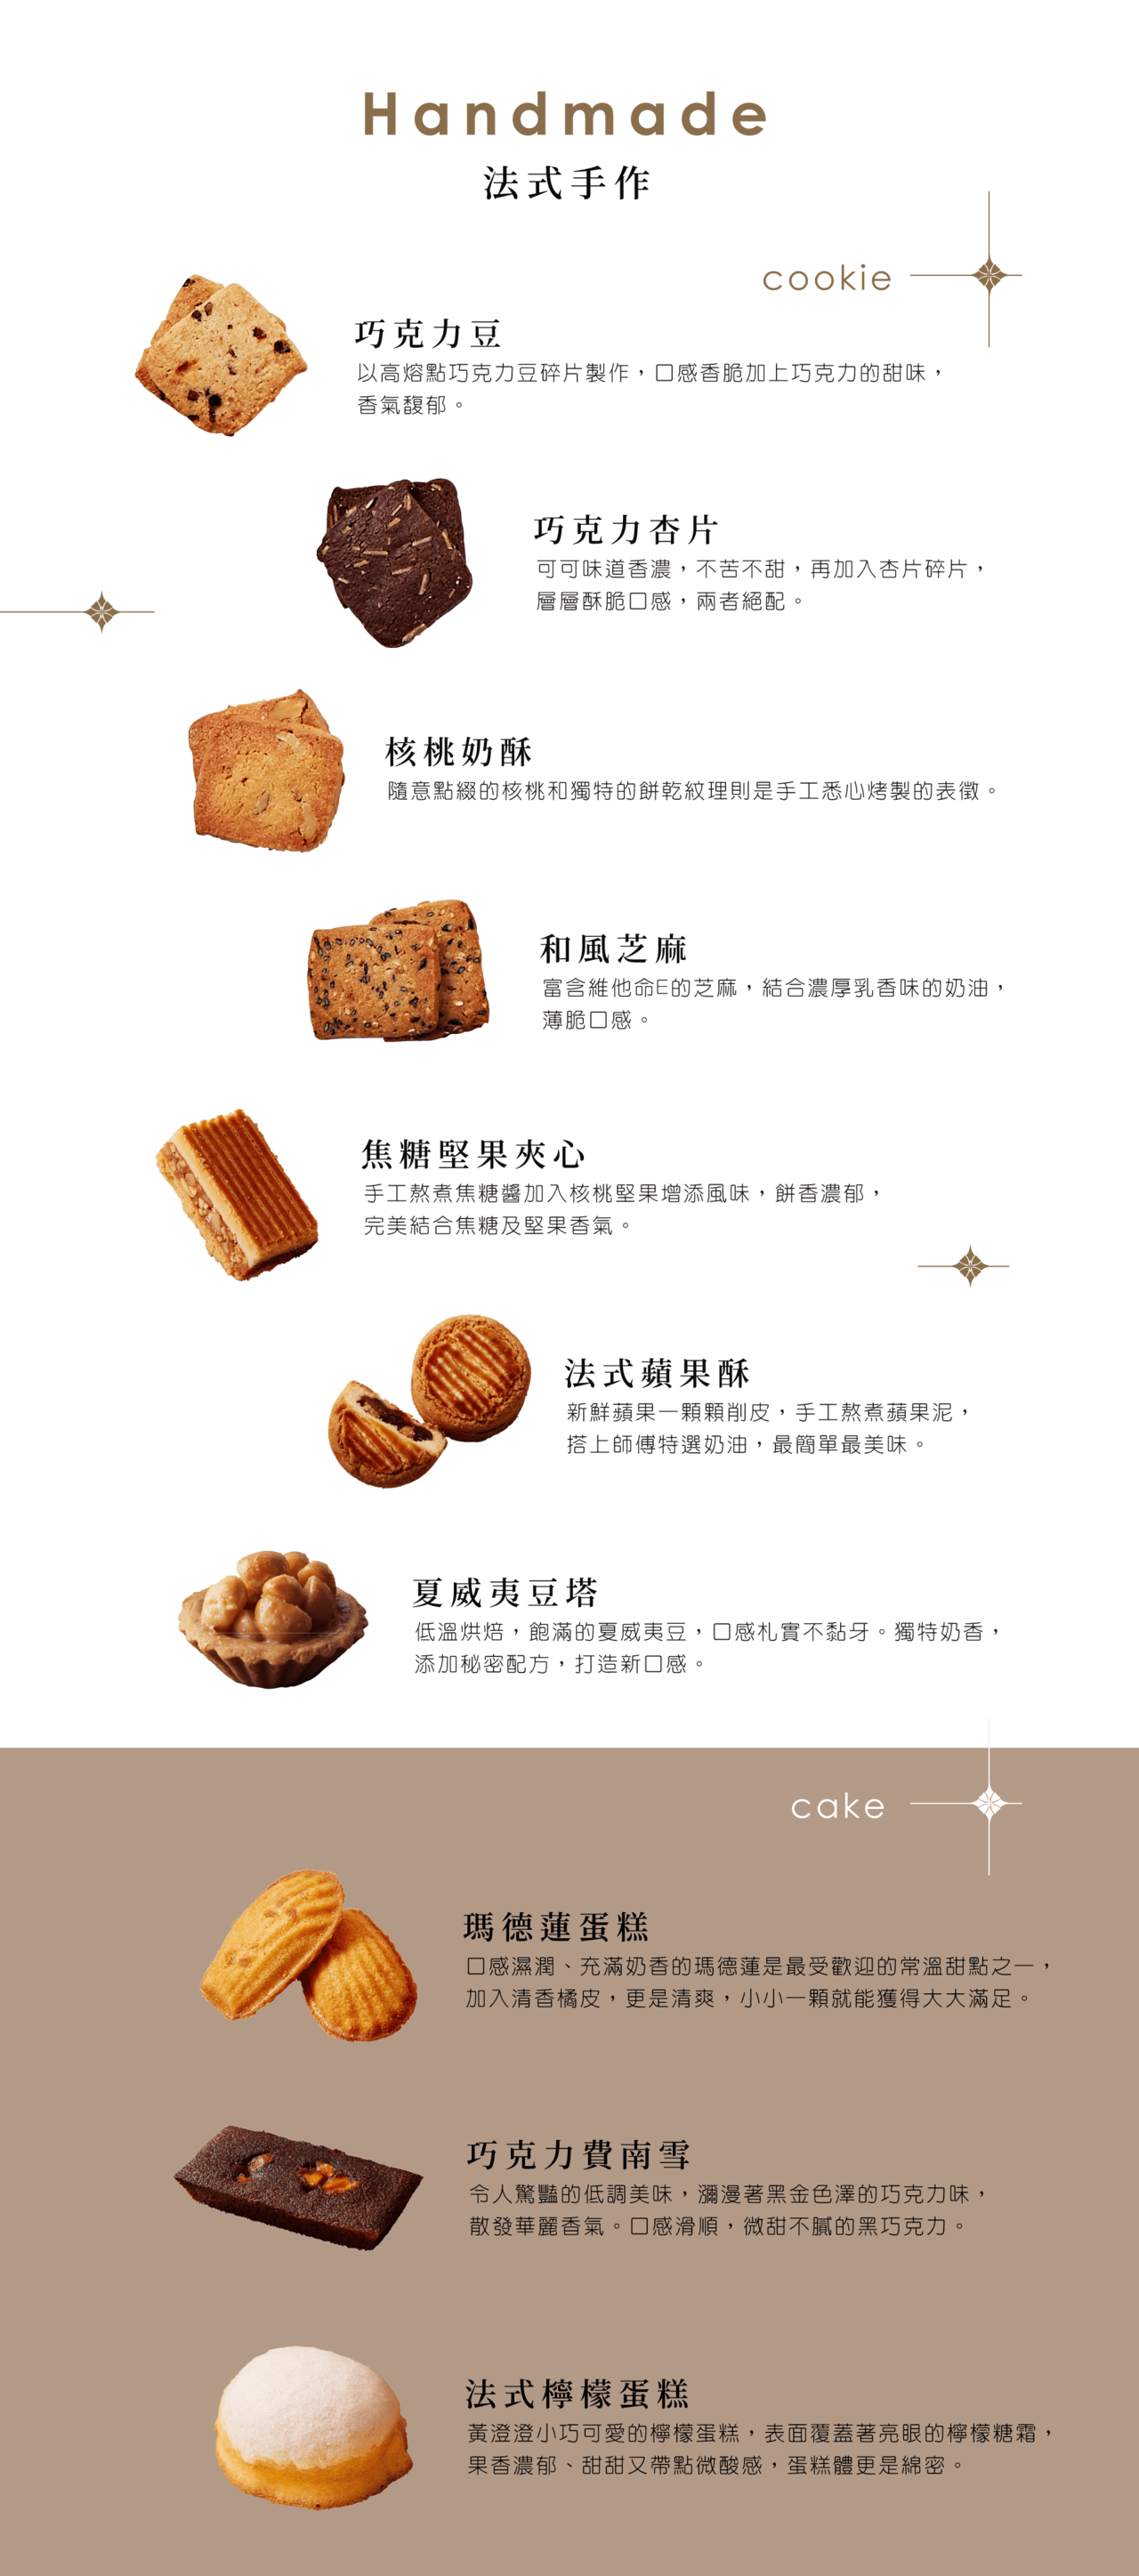 康鼎食品－中西式手工喜餅,中式漢餅